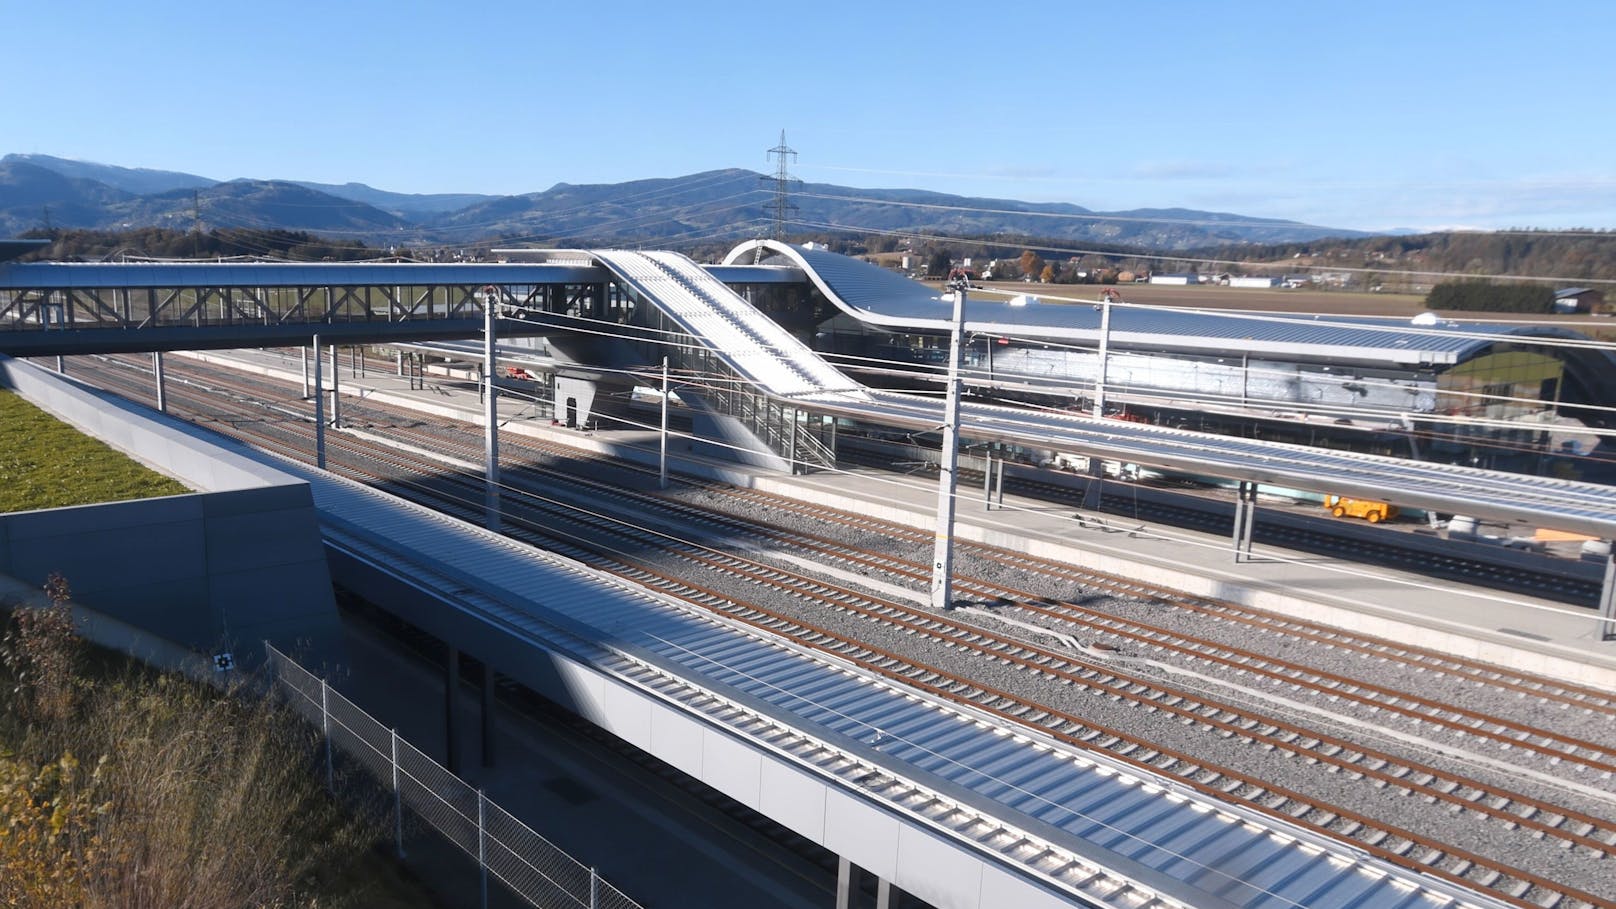 Während der Kärntner Abschnitt für den Nahverkehr bereits in Betrieb genommen wurde, wird in der Steiermark die finale Projektphase eingeläutet – mit einer Vielzahl an Tests, Übungen, Überprüfungen und Schulungen, bis zur Gesamtinbetriebnahme Ende 2025 (Bild: Bahnhof Weststeiermark)